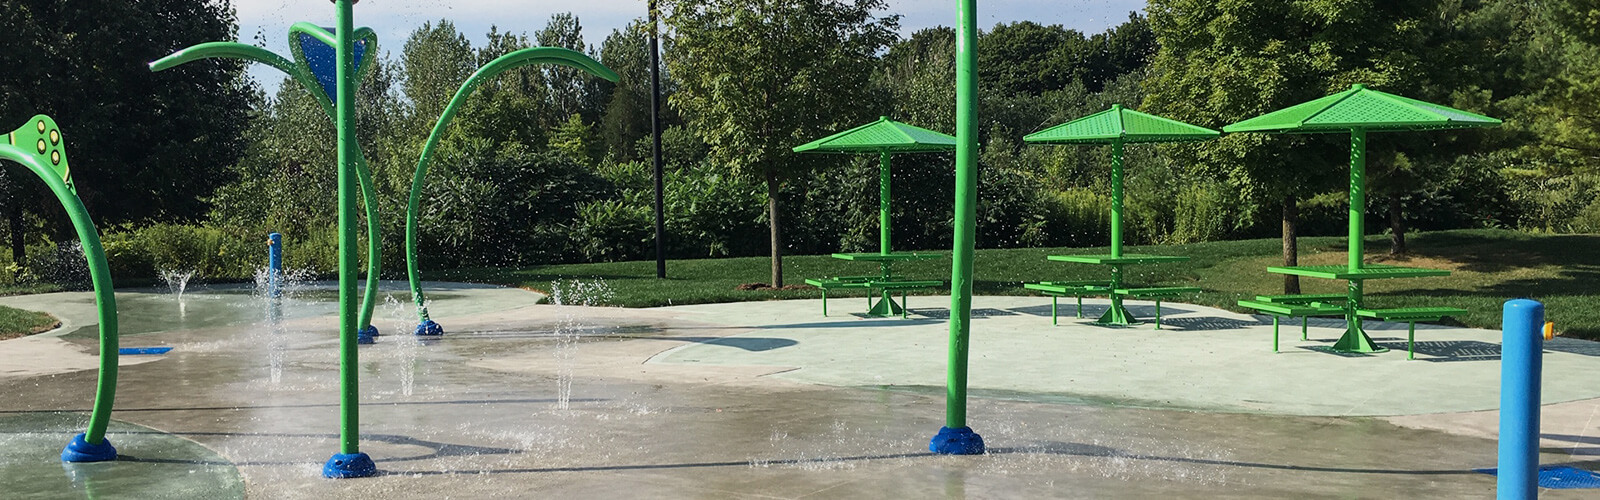 Water spraying at the Milliken Park children's splashpad